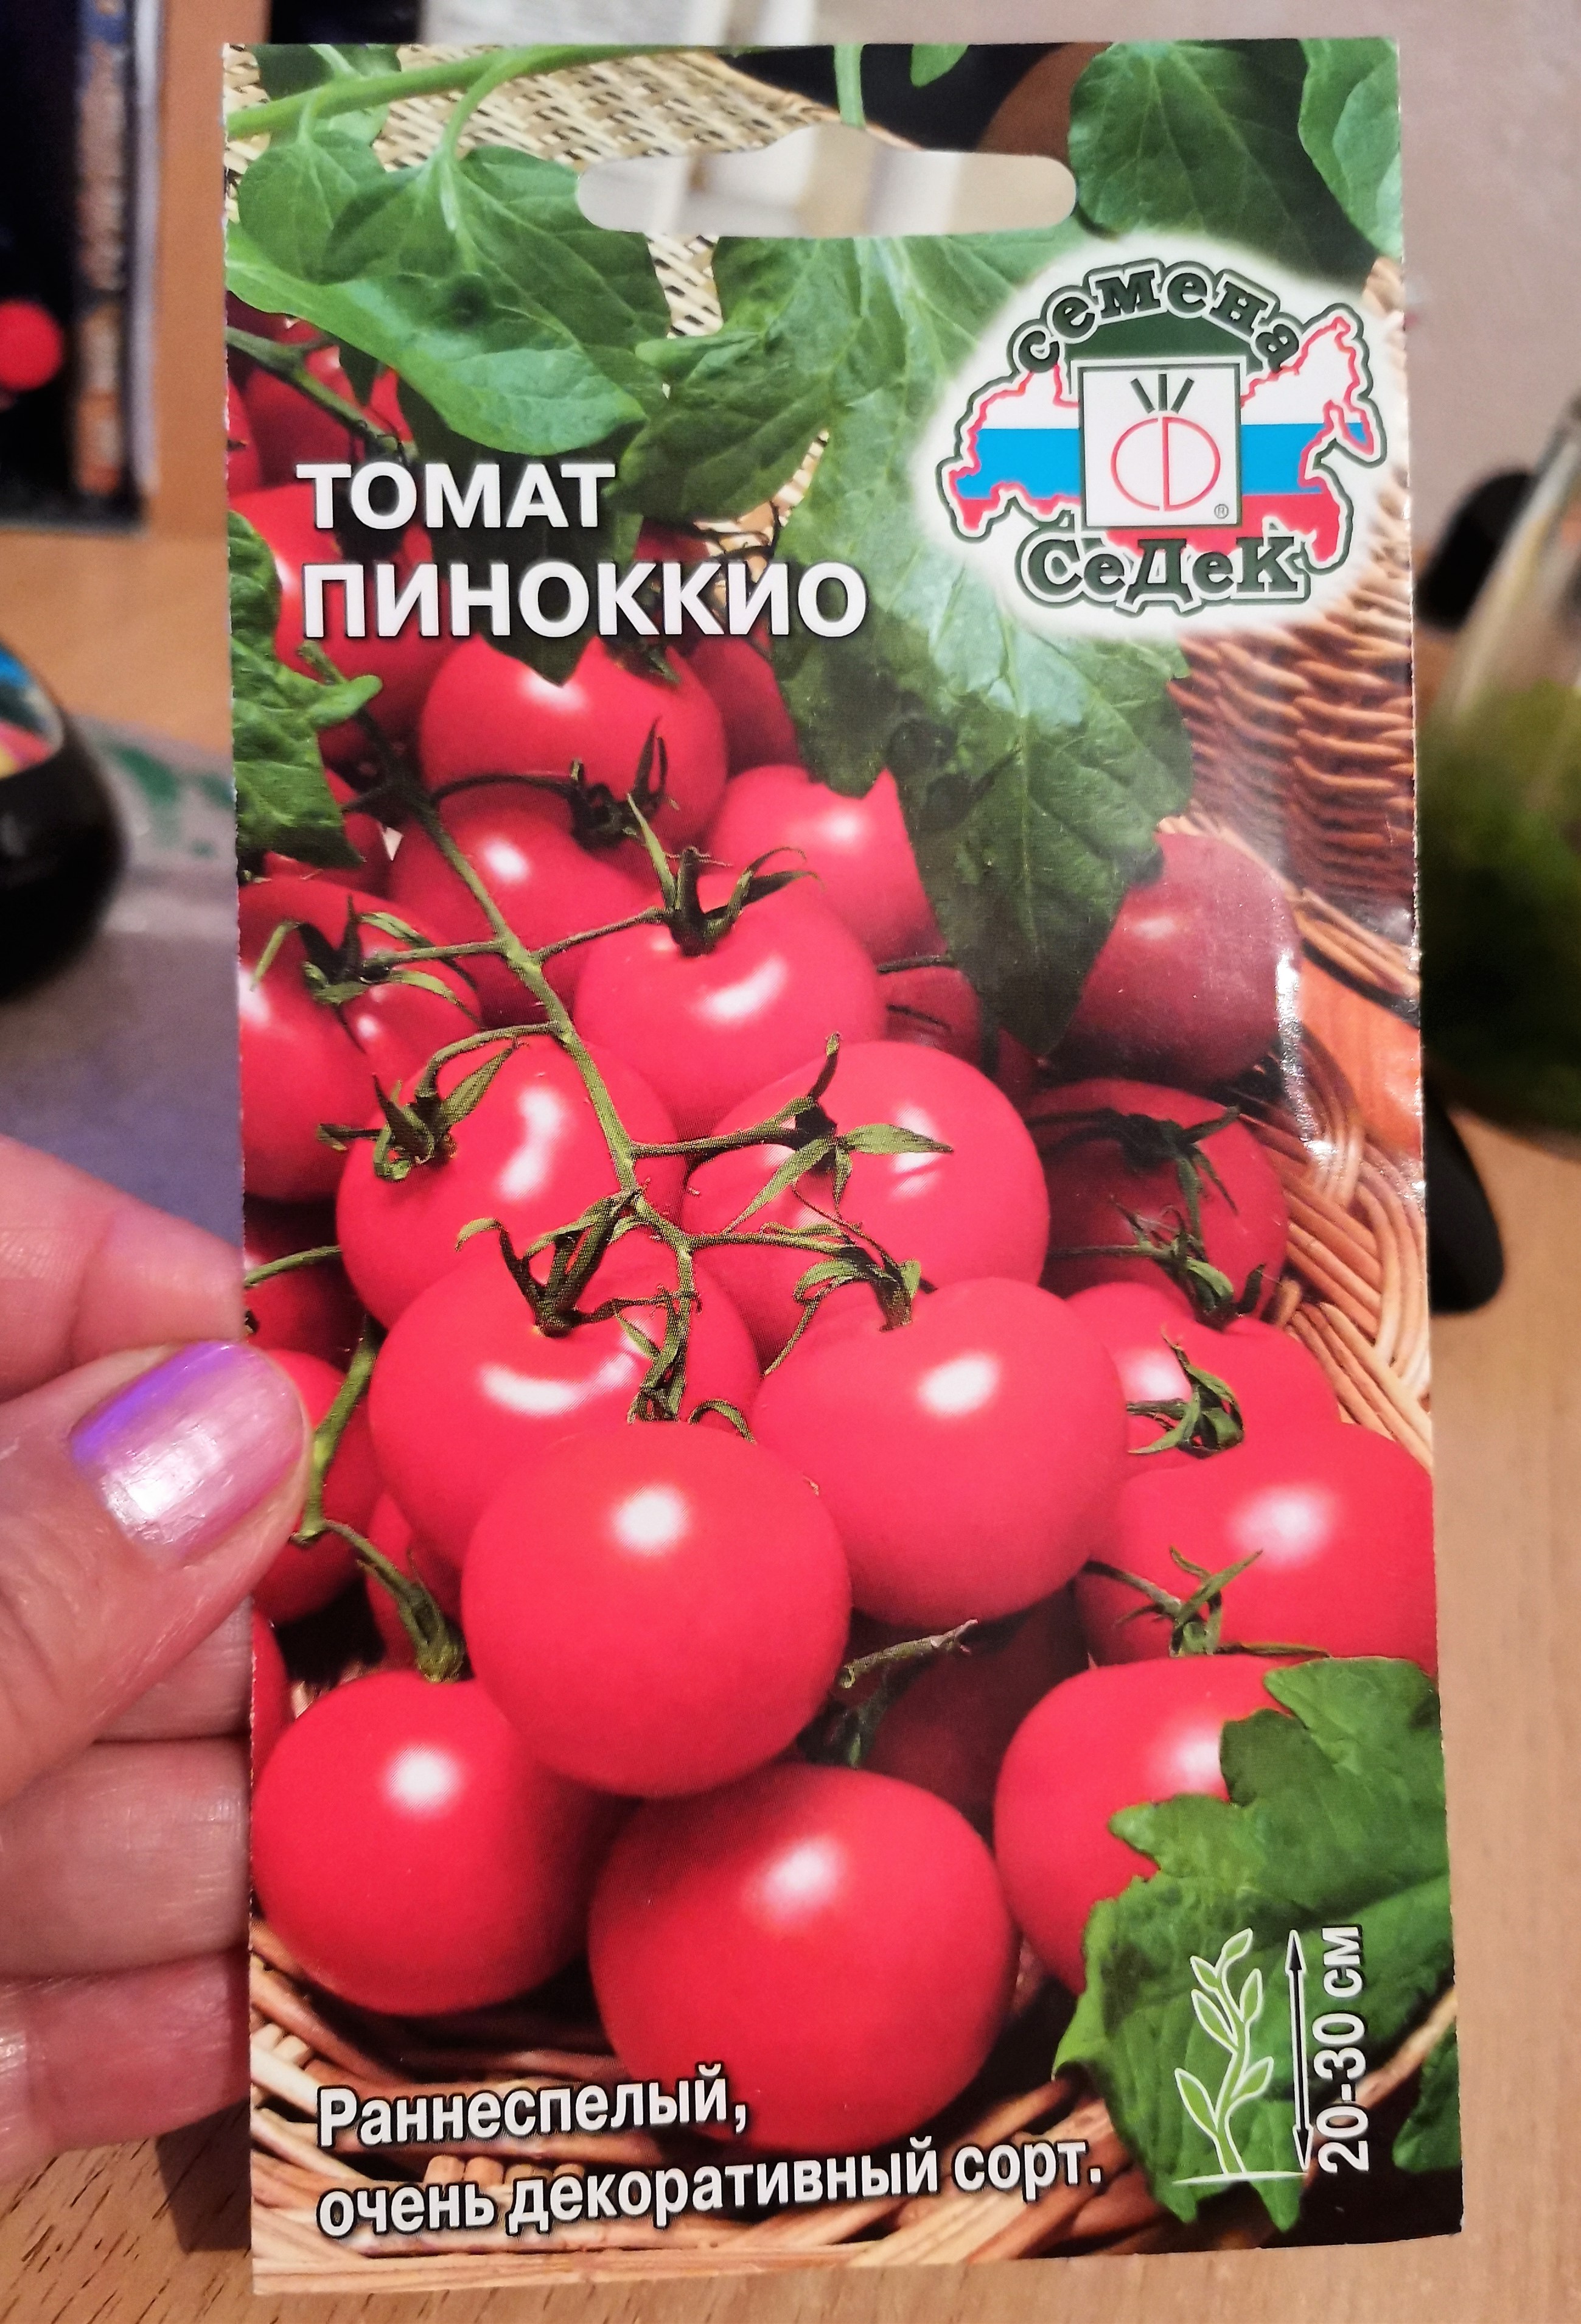 Яркие бусы на кустах — миниатюрный томат «Пиноккио»: выращиваем на участке и дома на балконе